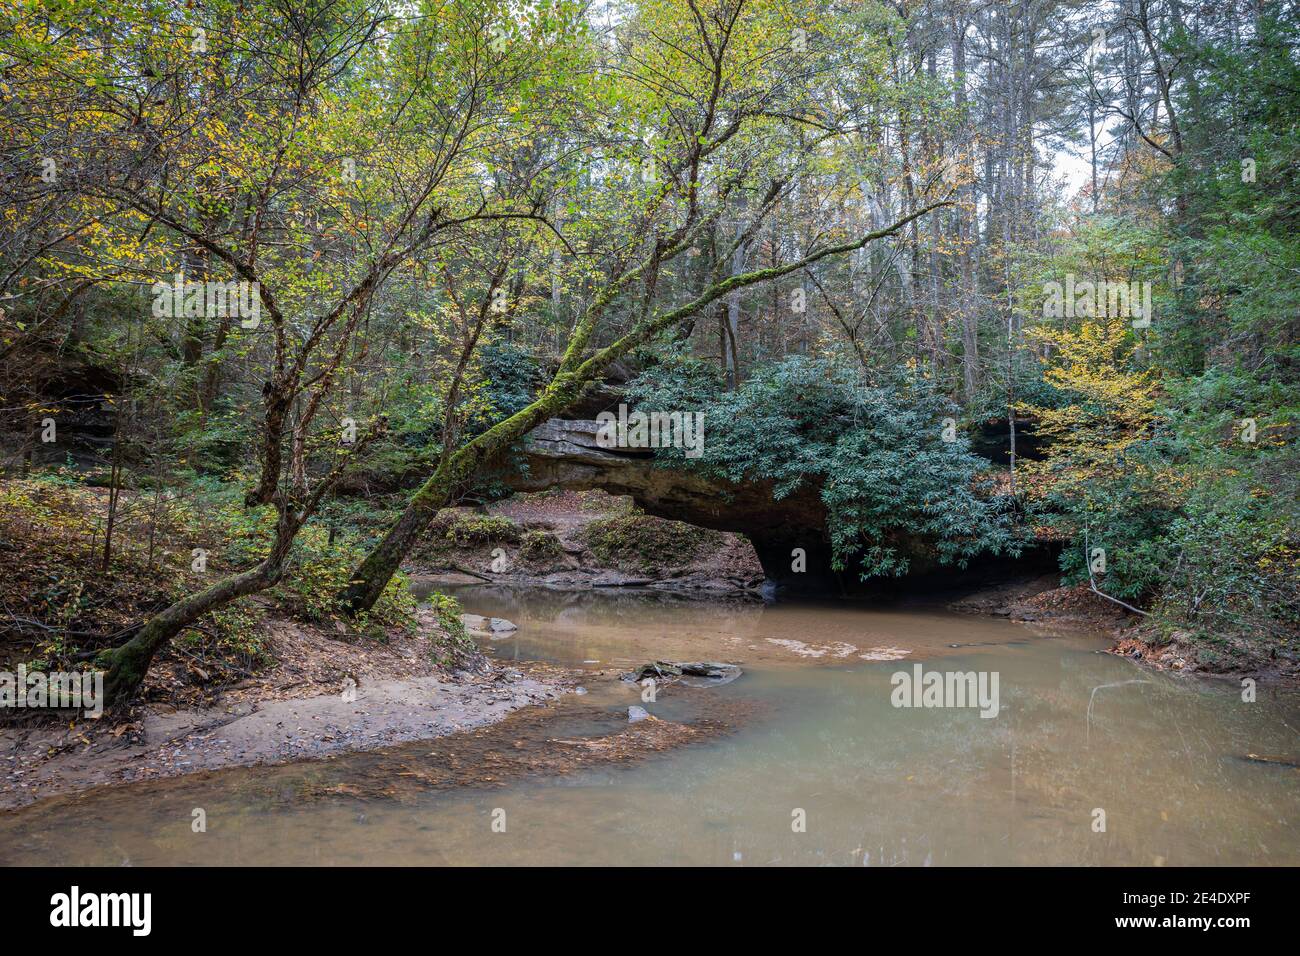 Una tranquila escena forestal en la garganta del Río Rojo del este de Kentucky. Foto de stock